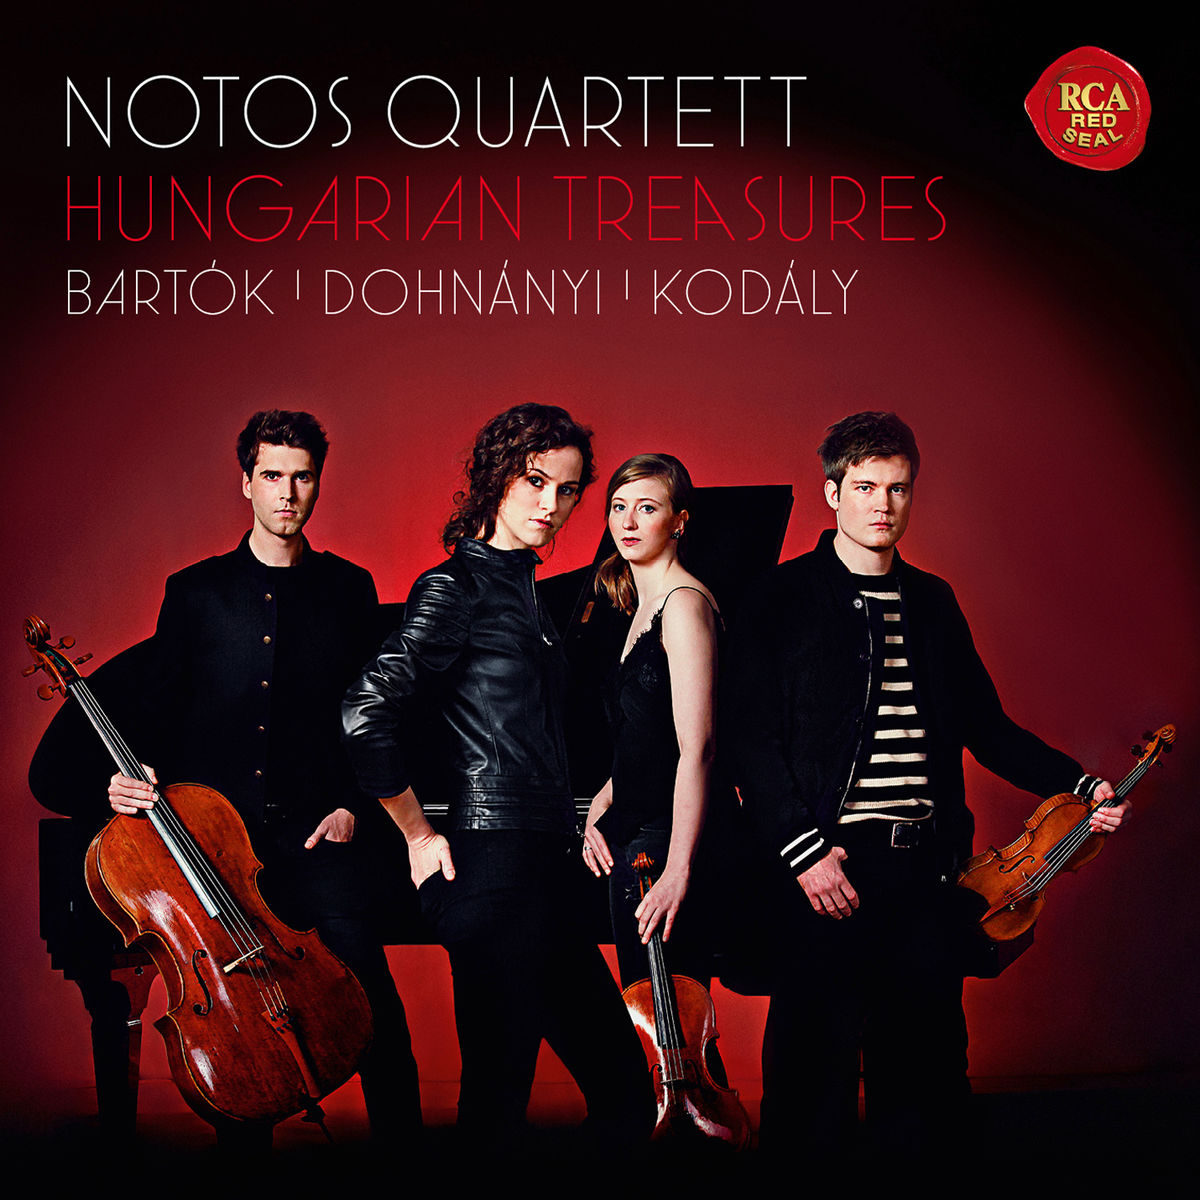 Notos Quartett – Hungarian Treasures – Bartok, Dohnanyi & Kodaly (2017) [Qobuz FLAC 24bit/48kHz]